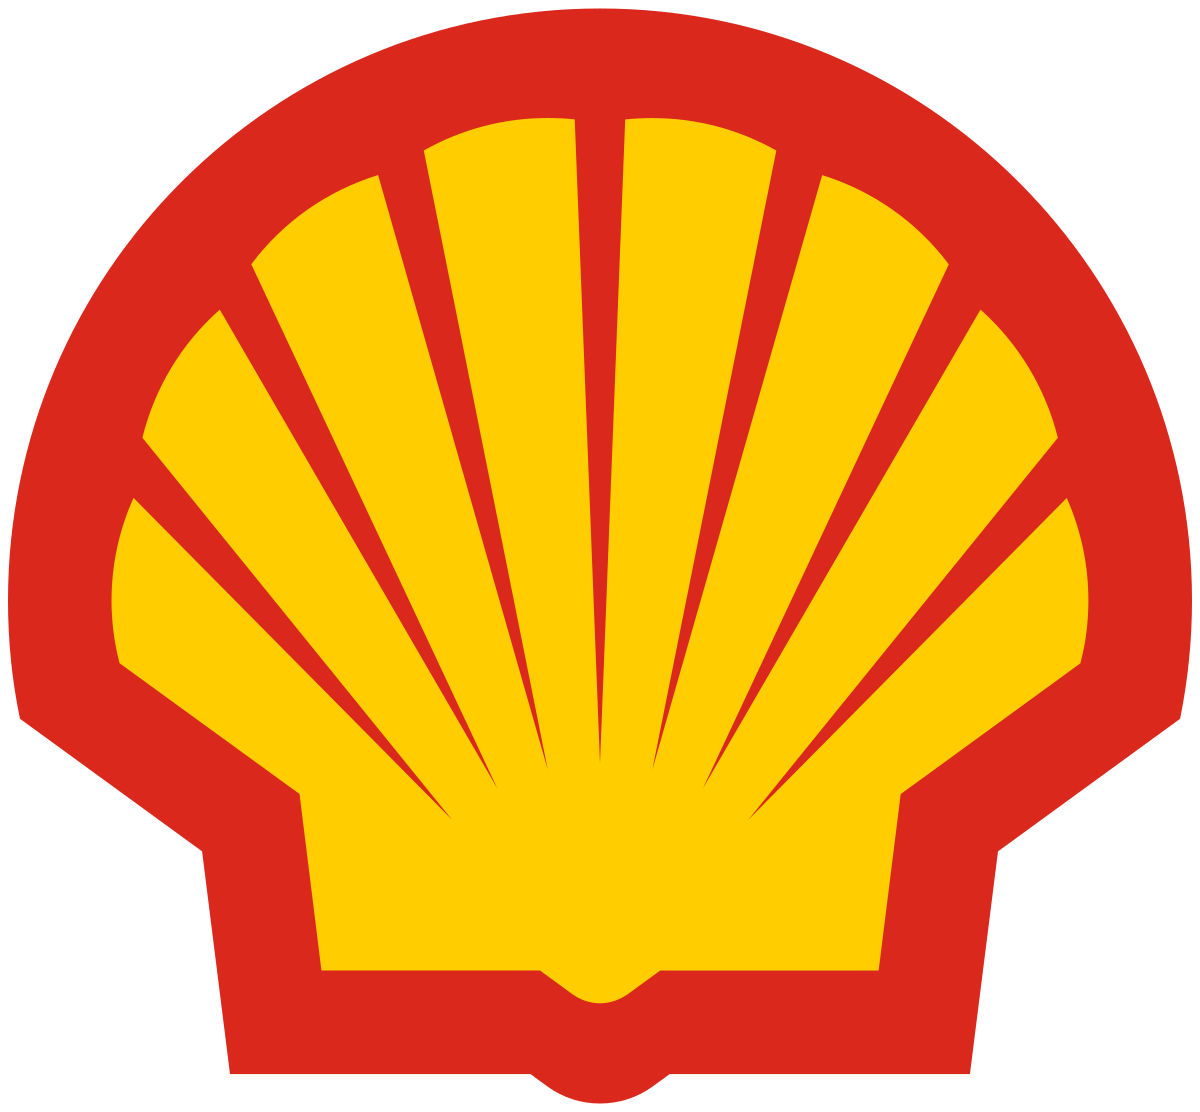 Royal Shell Wikipedia